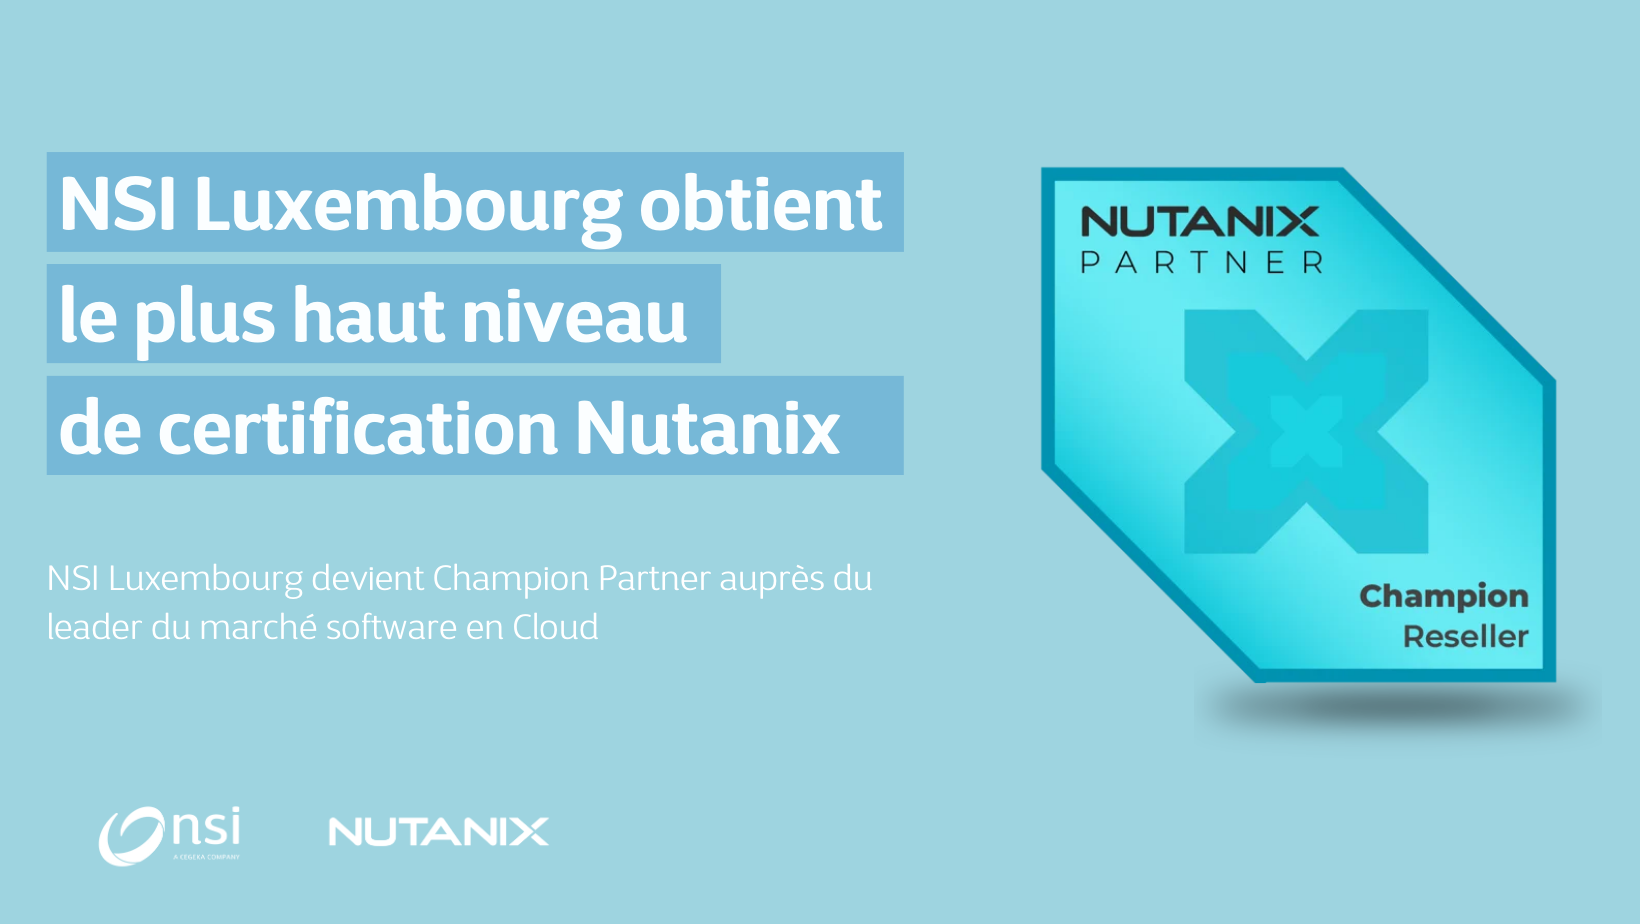 NSI Luxembourg obtient le plus haut niveau de certification Nutanix